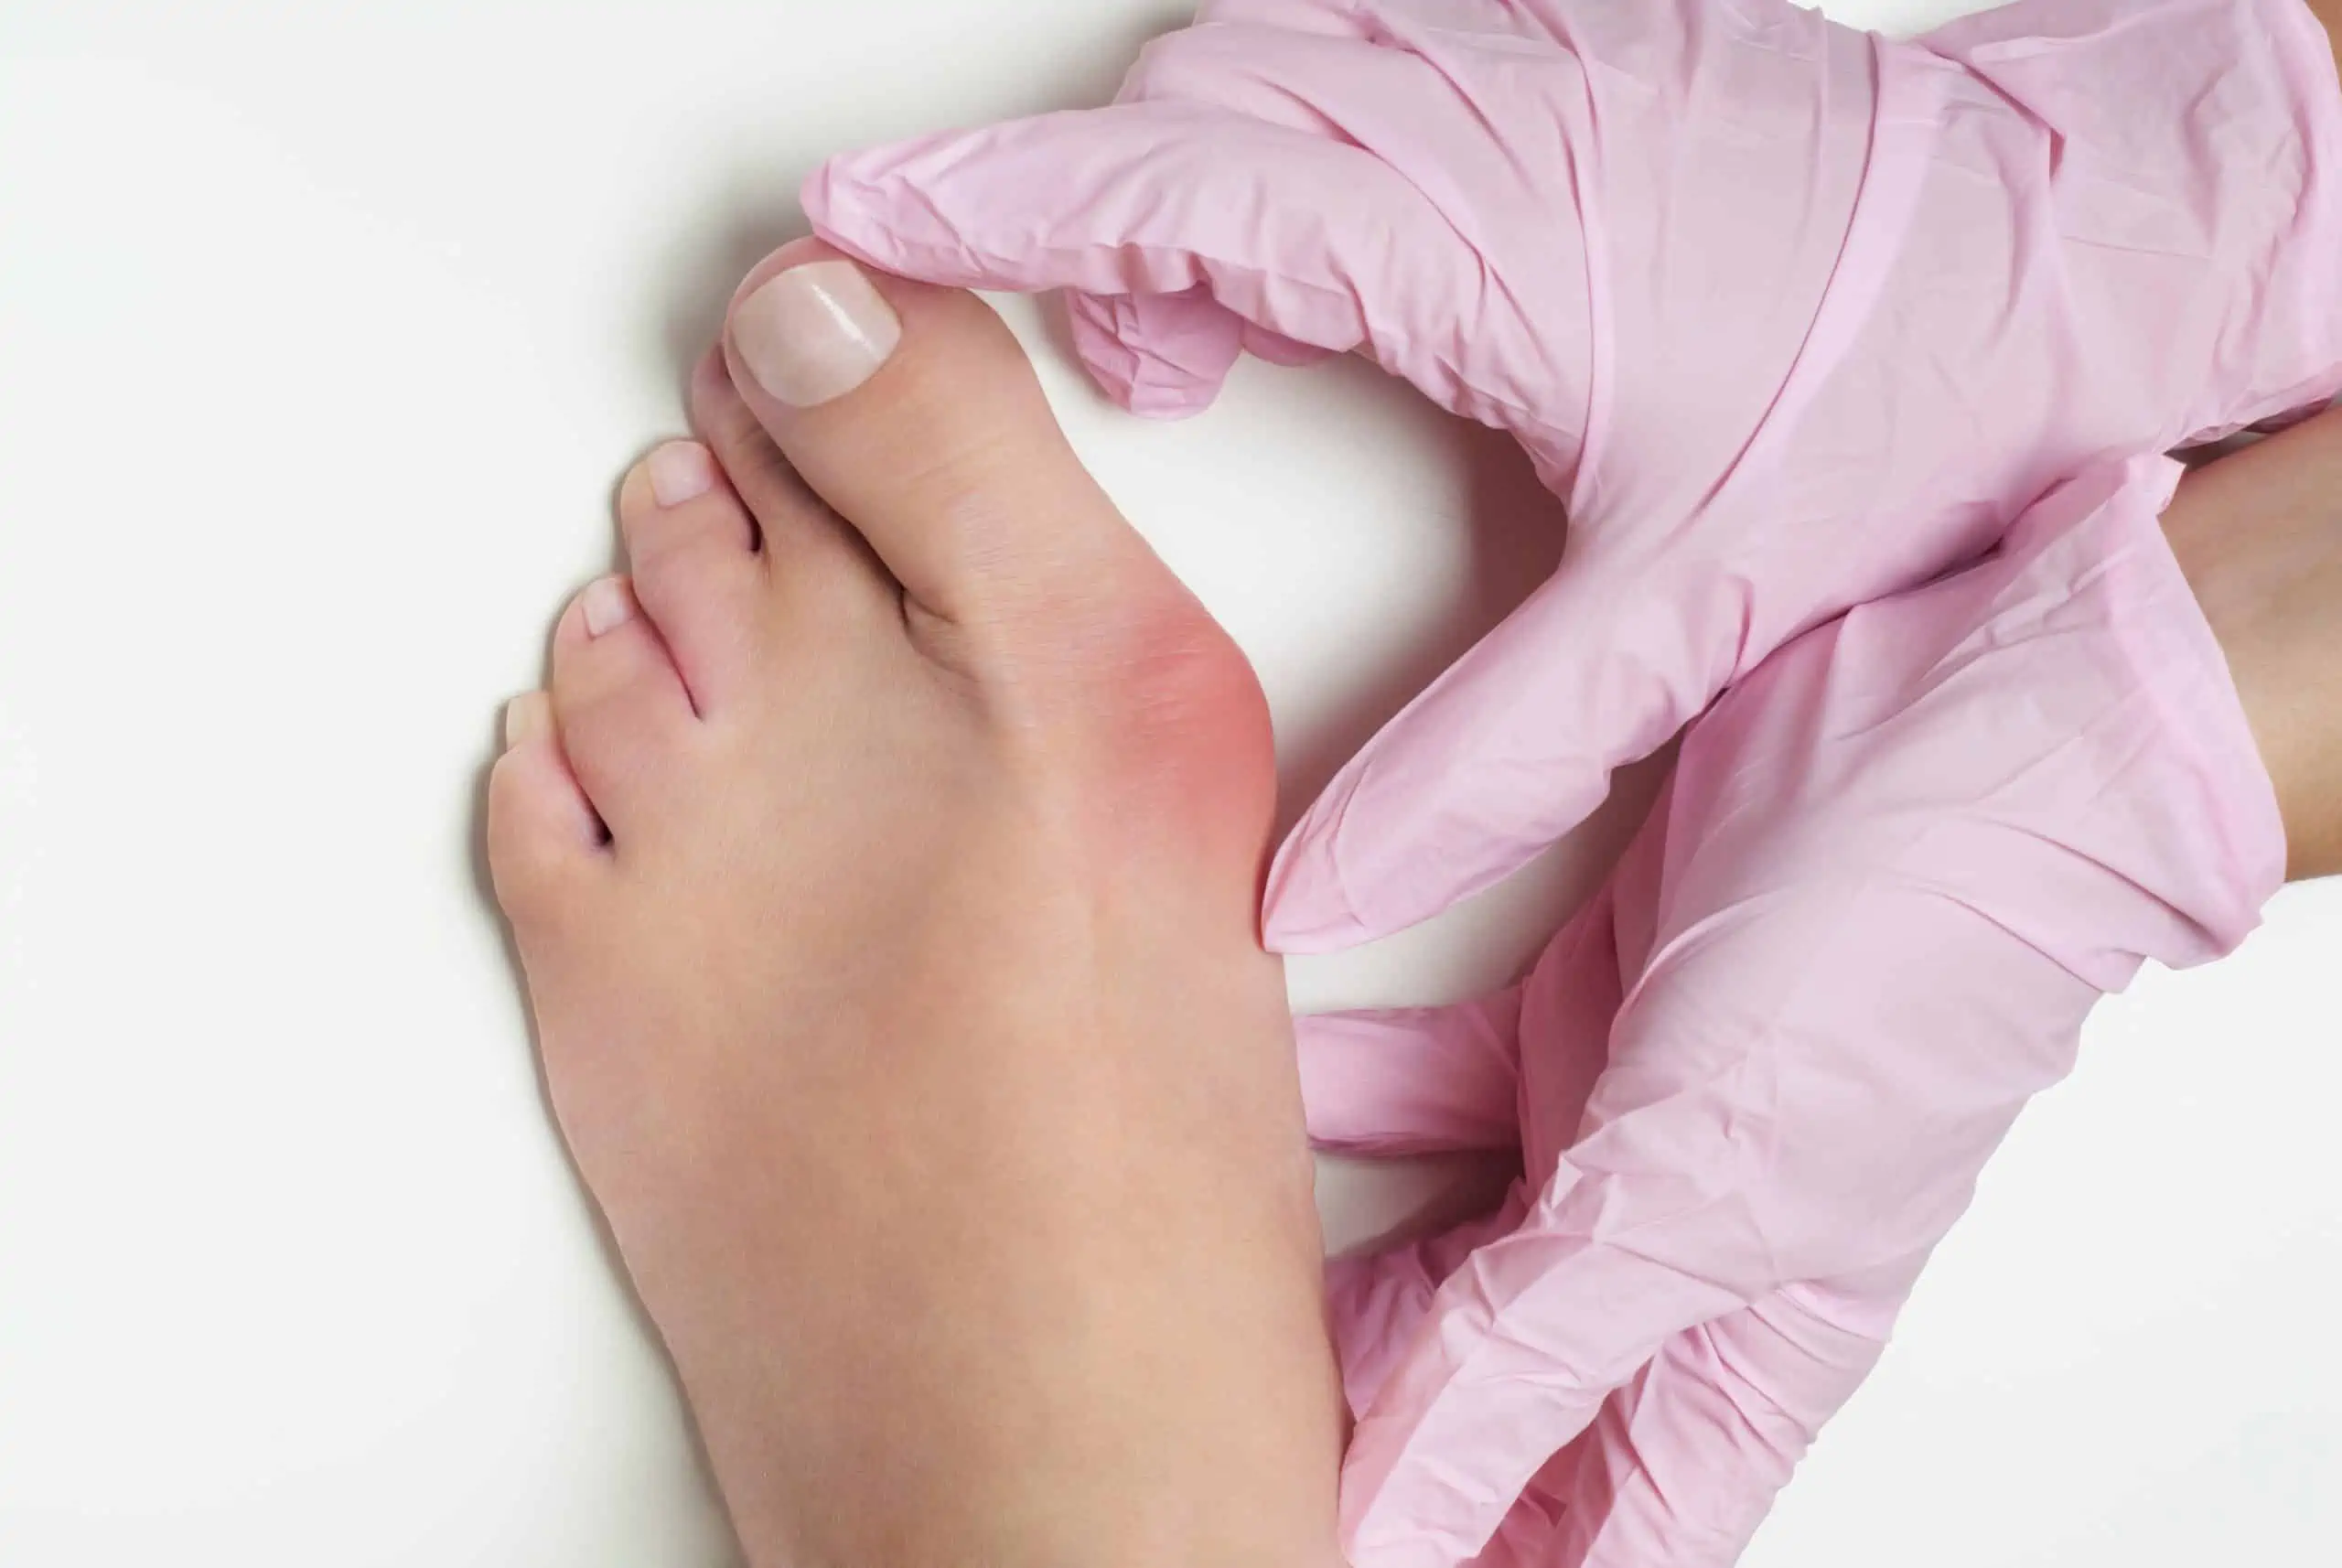 deformacije stopala - uzrok, simptomi, liječenje